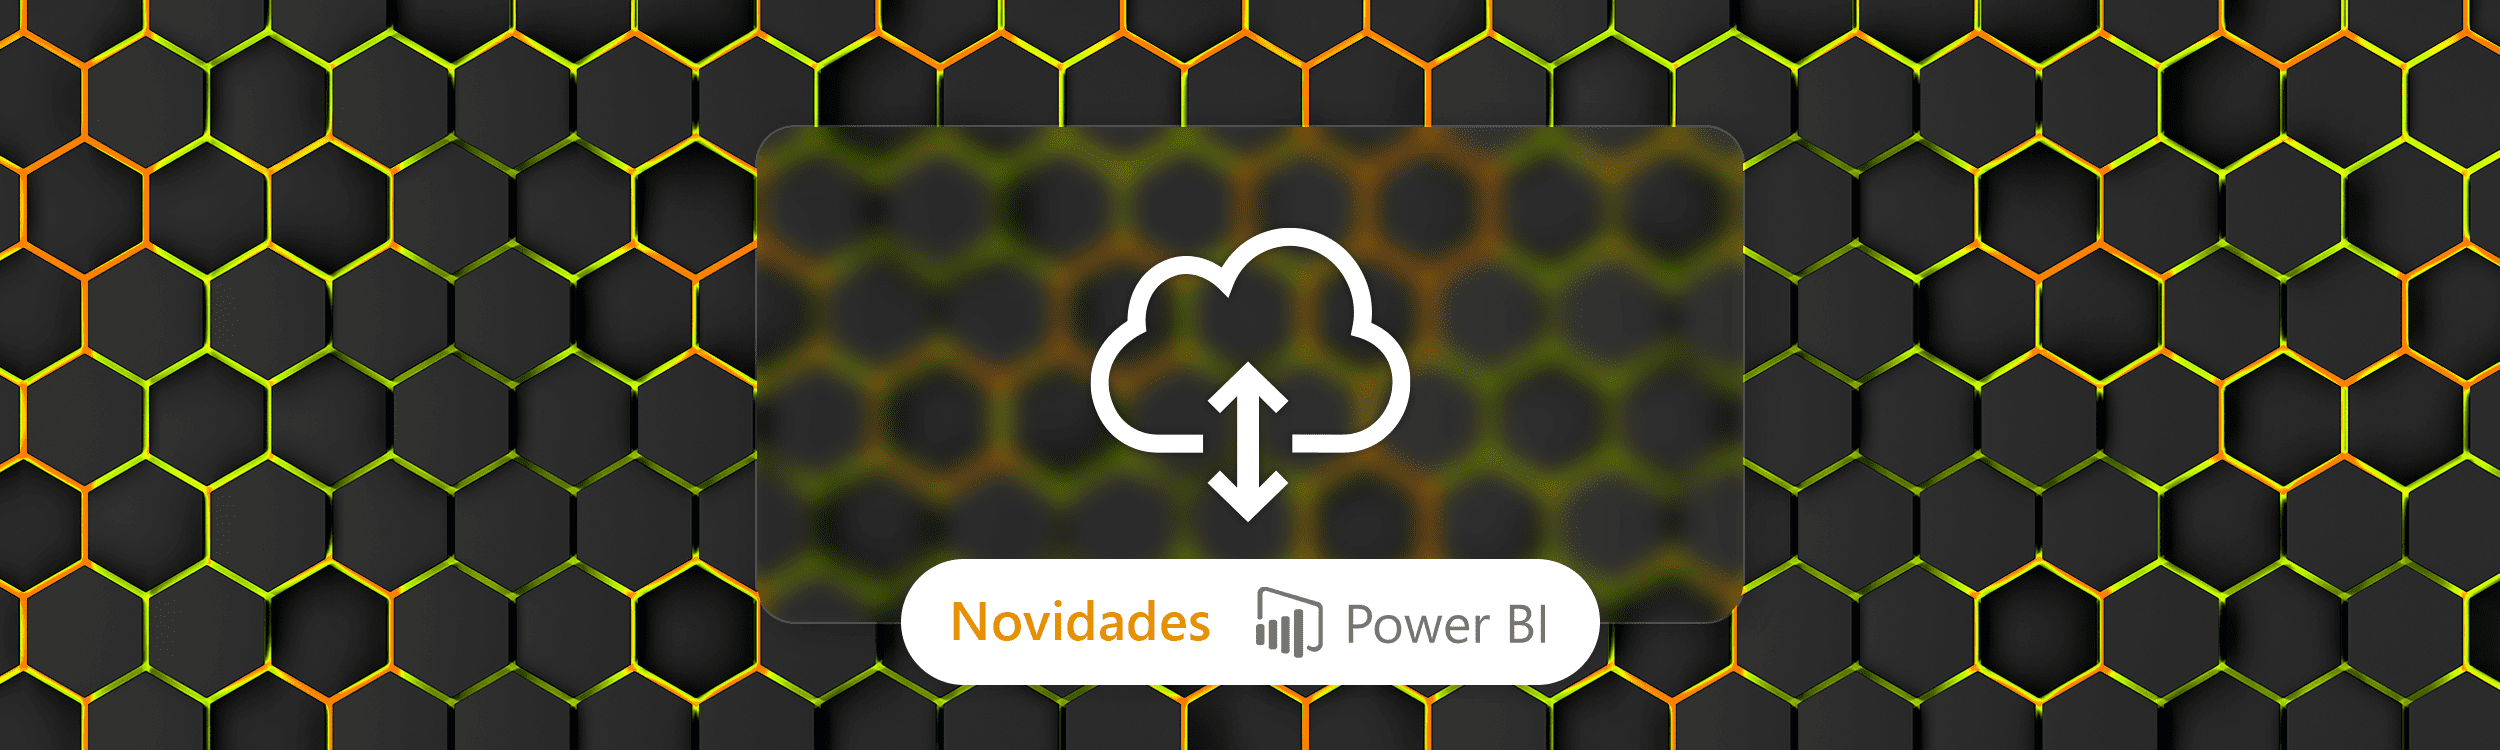 Nova atualização de Gateway de dados locais para o Power BI está disponível